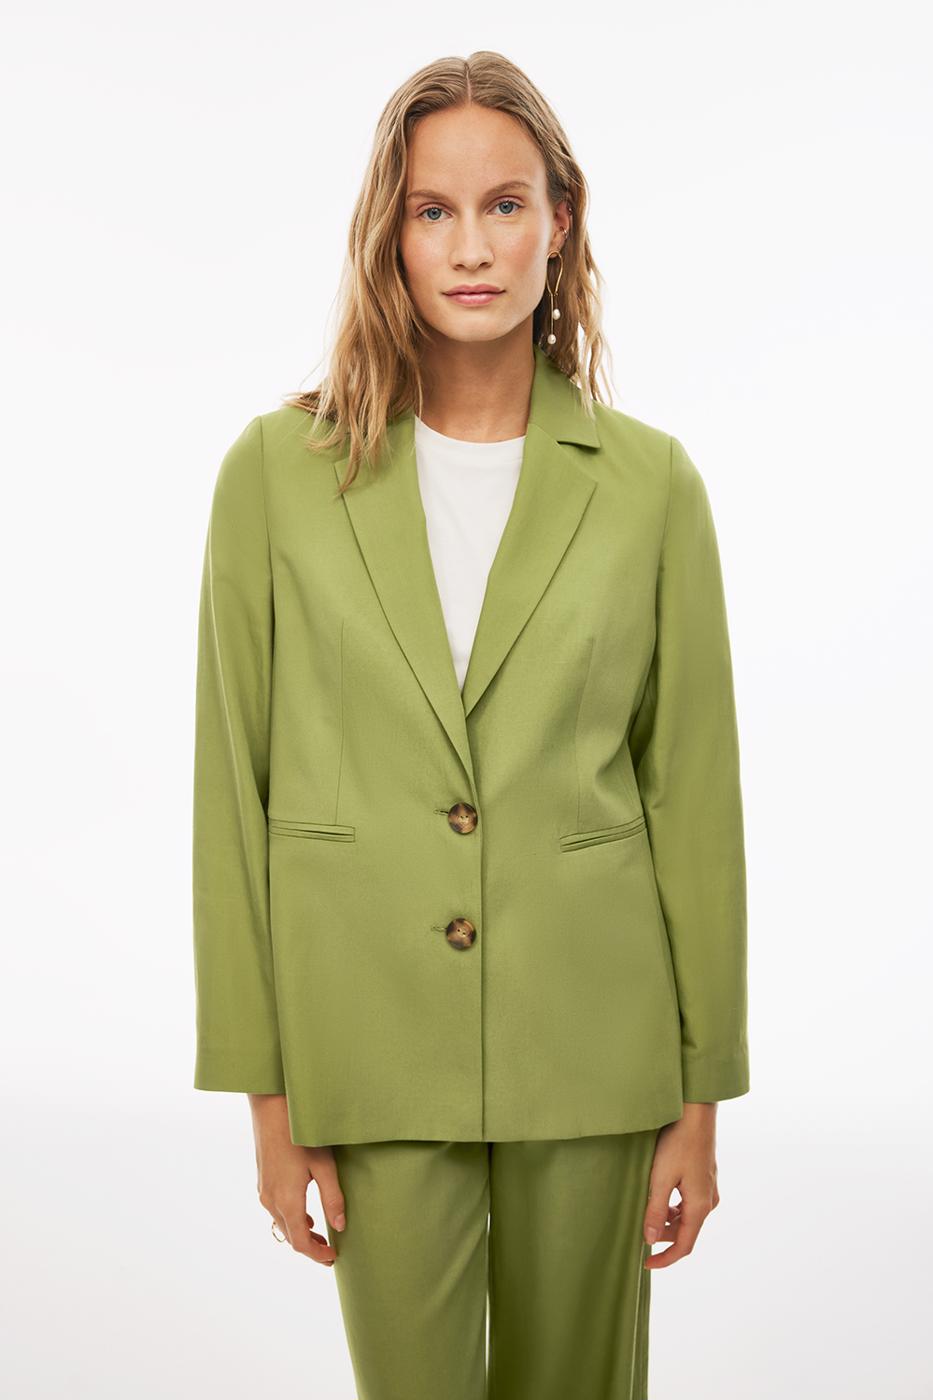 Bayan YEŞİL Blannes Regular Fit Standart Boy Takma Kol Ceket Yaka Açık Yeşil Renk Kadın Ceket